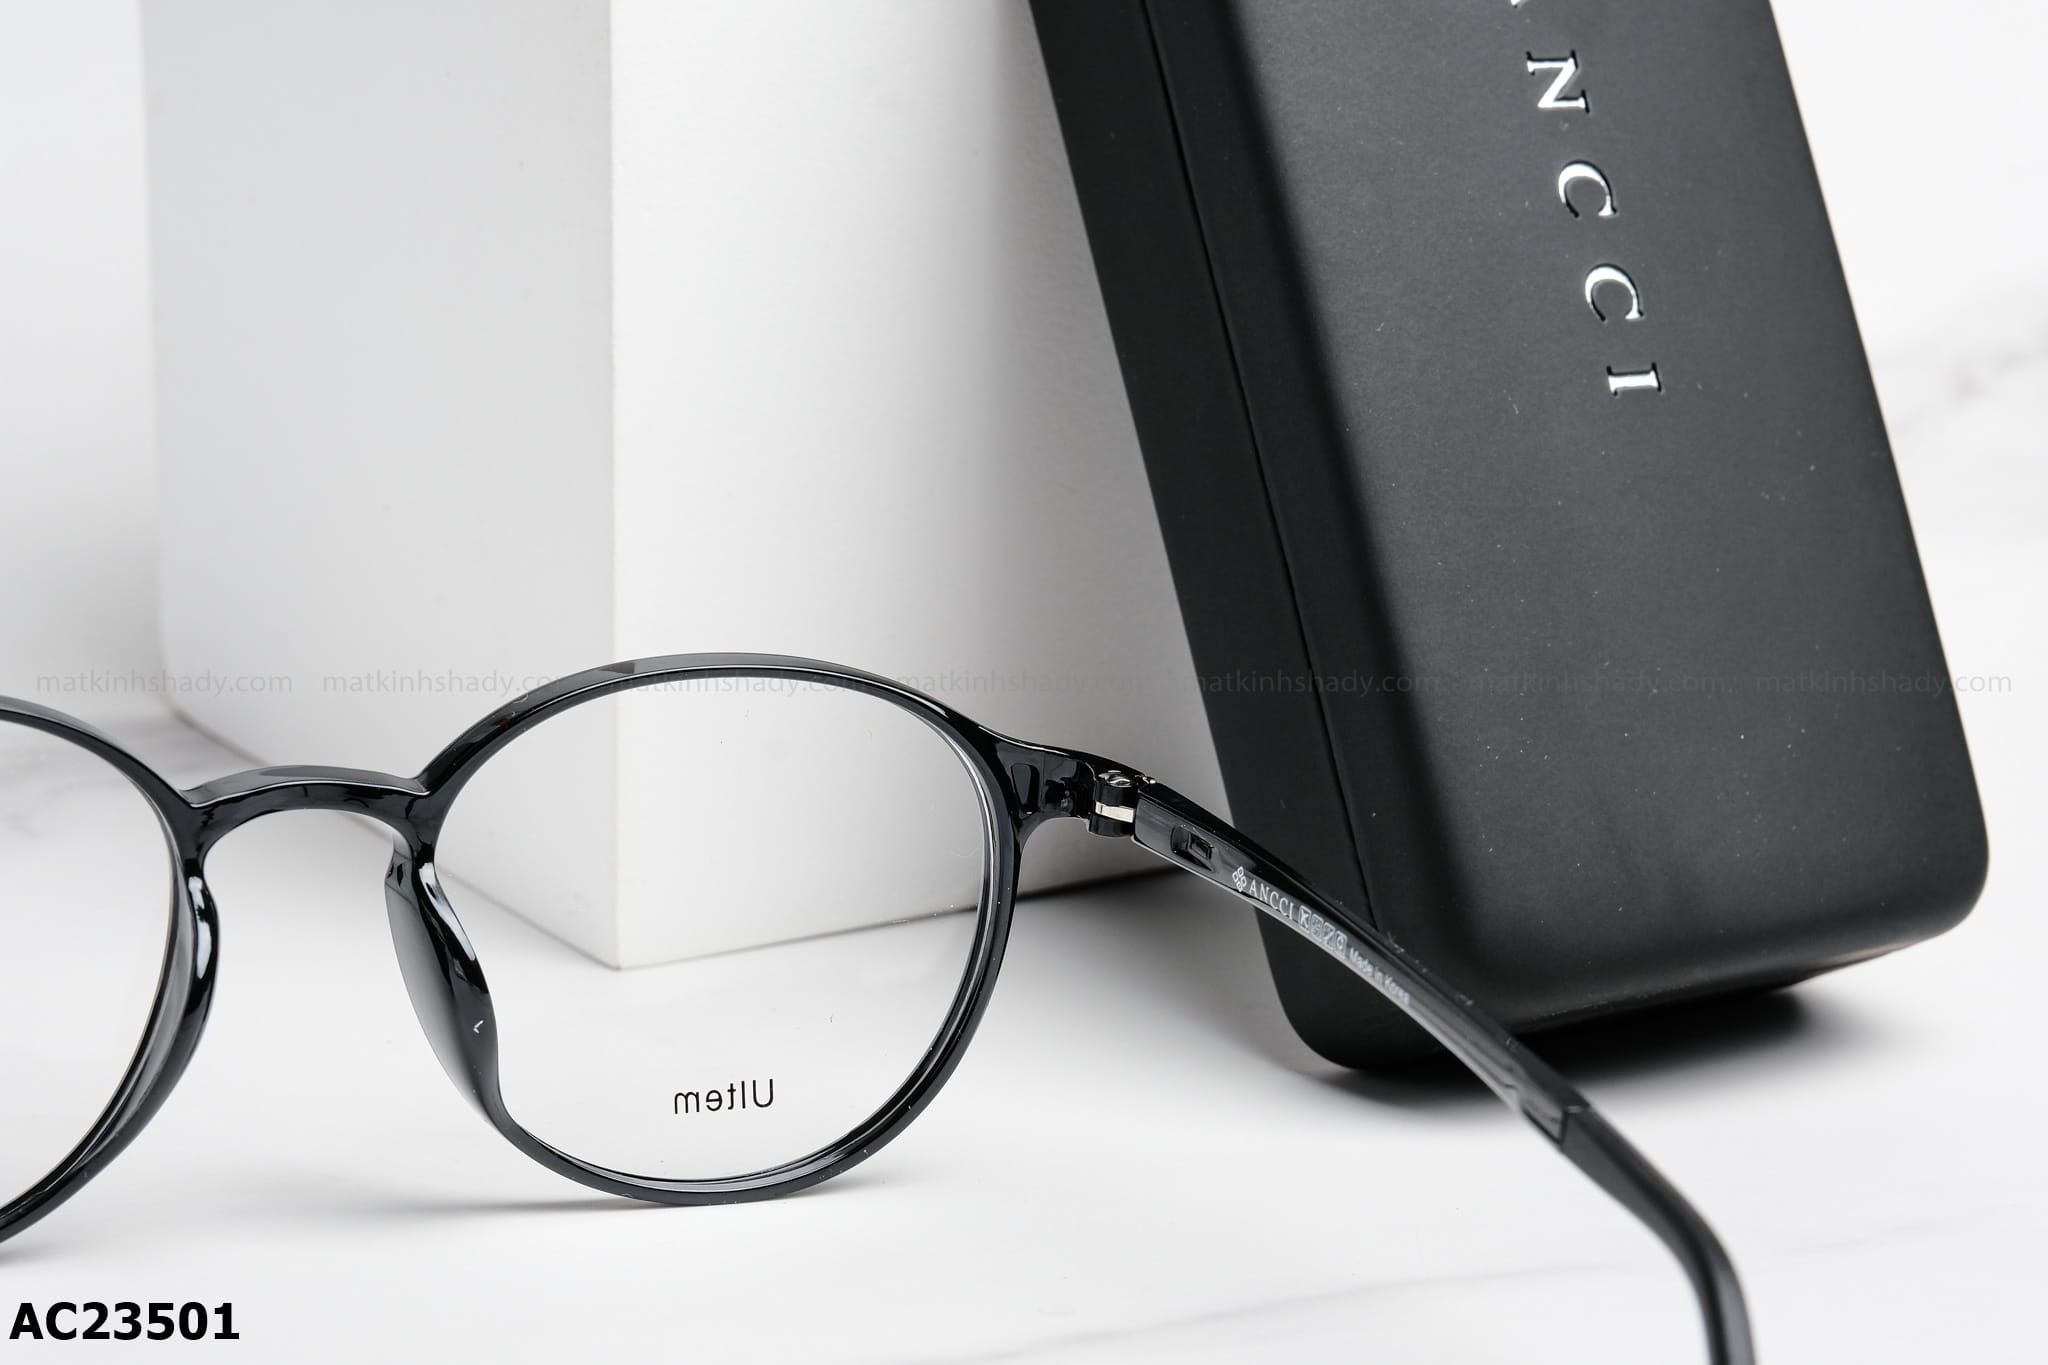  ANCCI Eyewear - Glasses - AC23501 